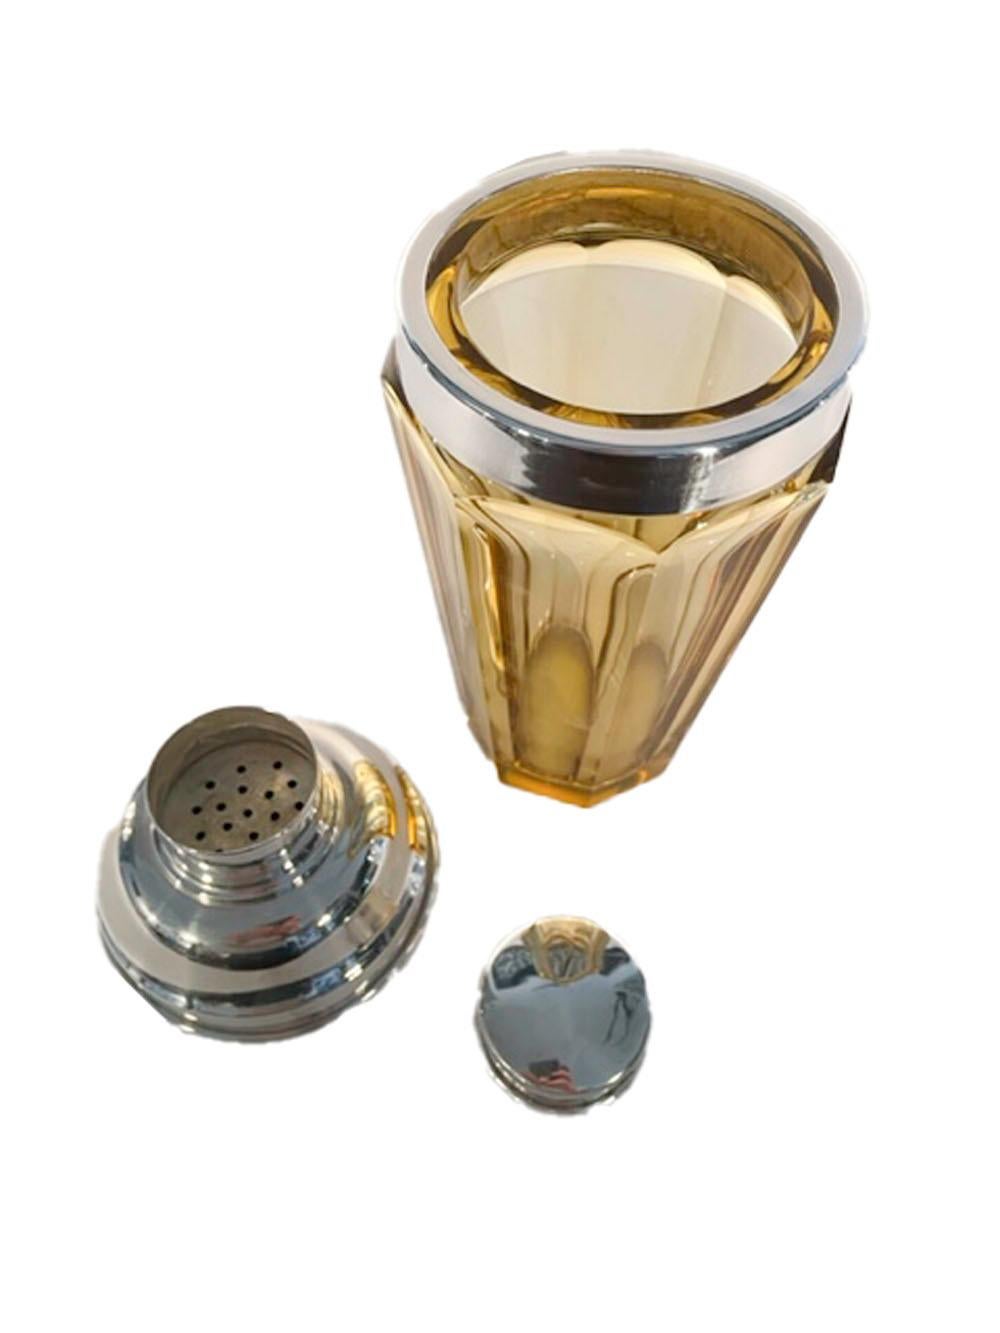 Shaker Art Déco en verre ambré à 8 faces polies, surmonté d'un couvercle argenté à verseur central.